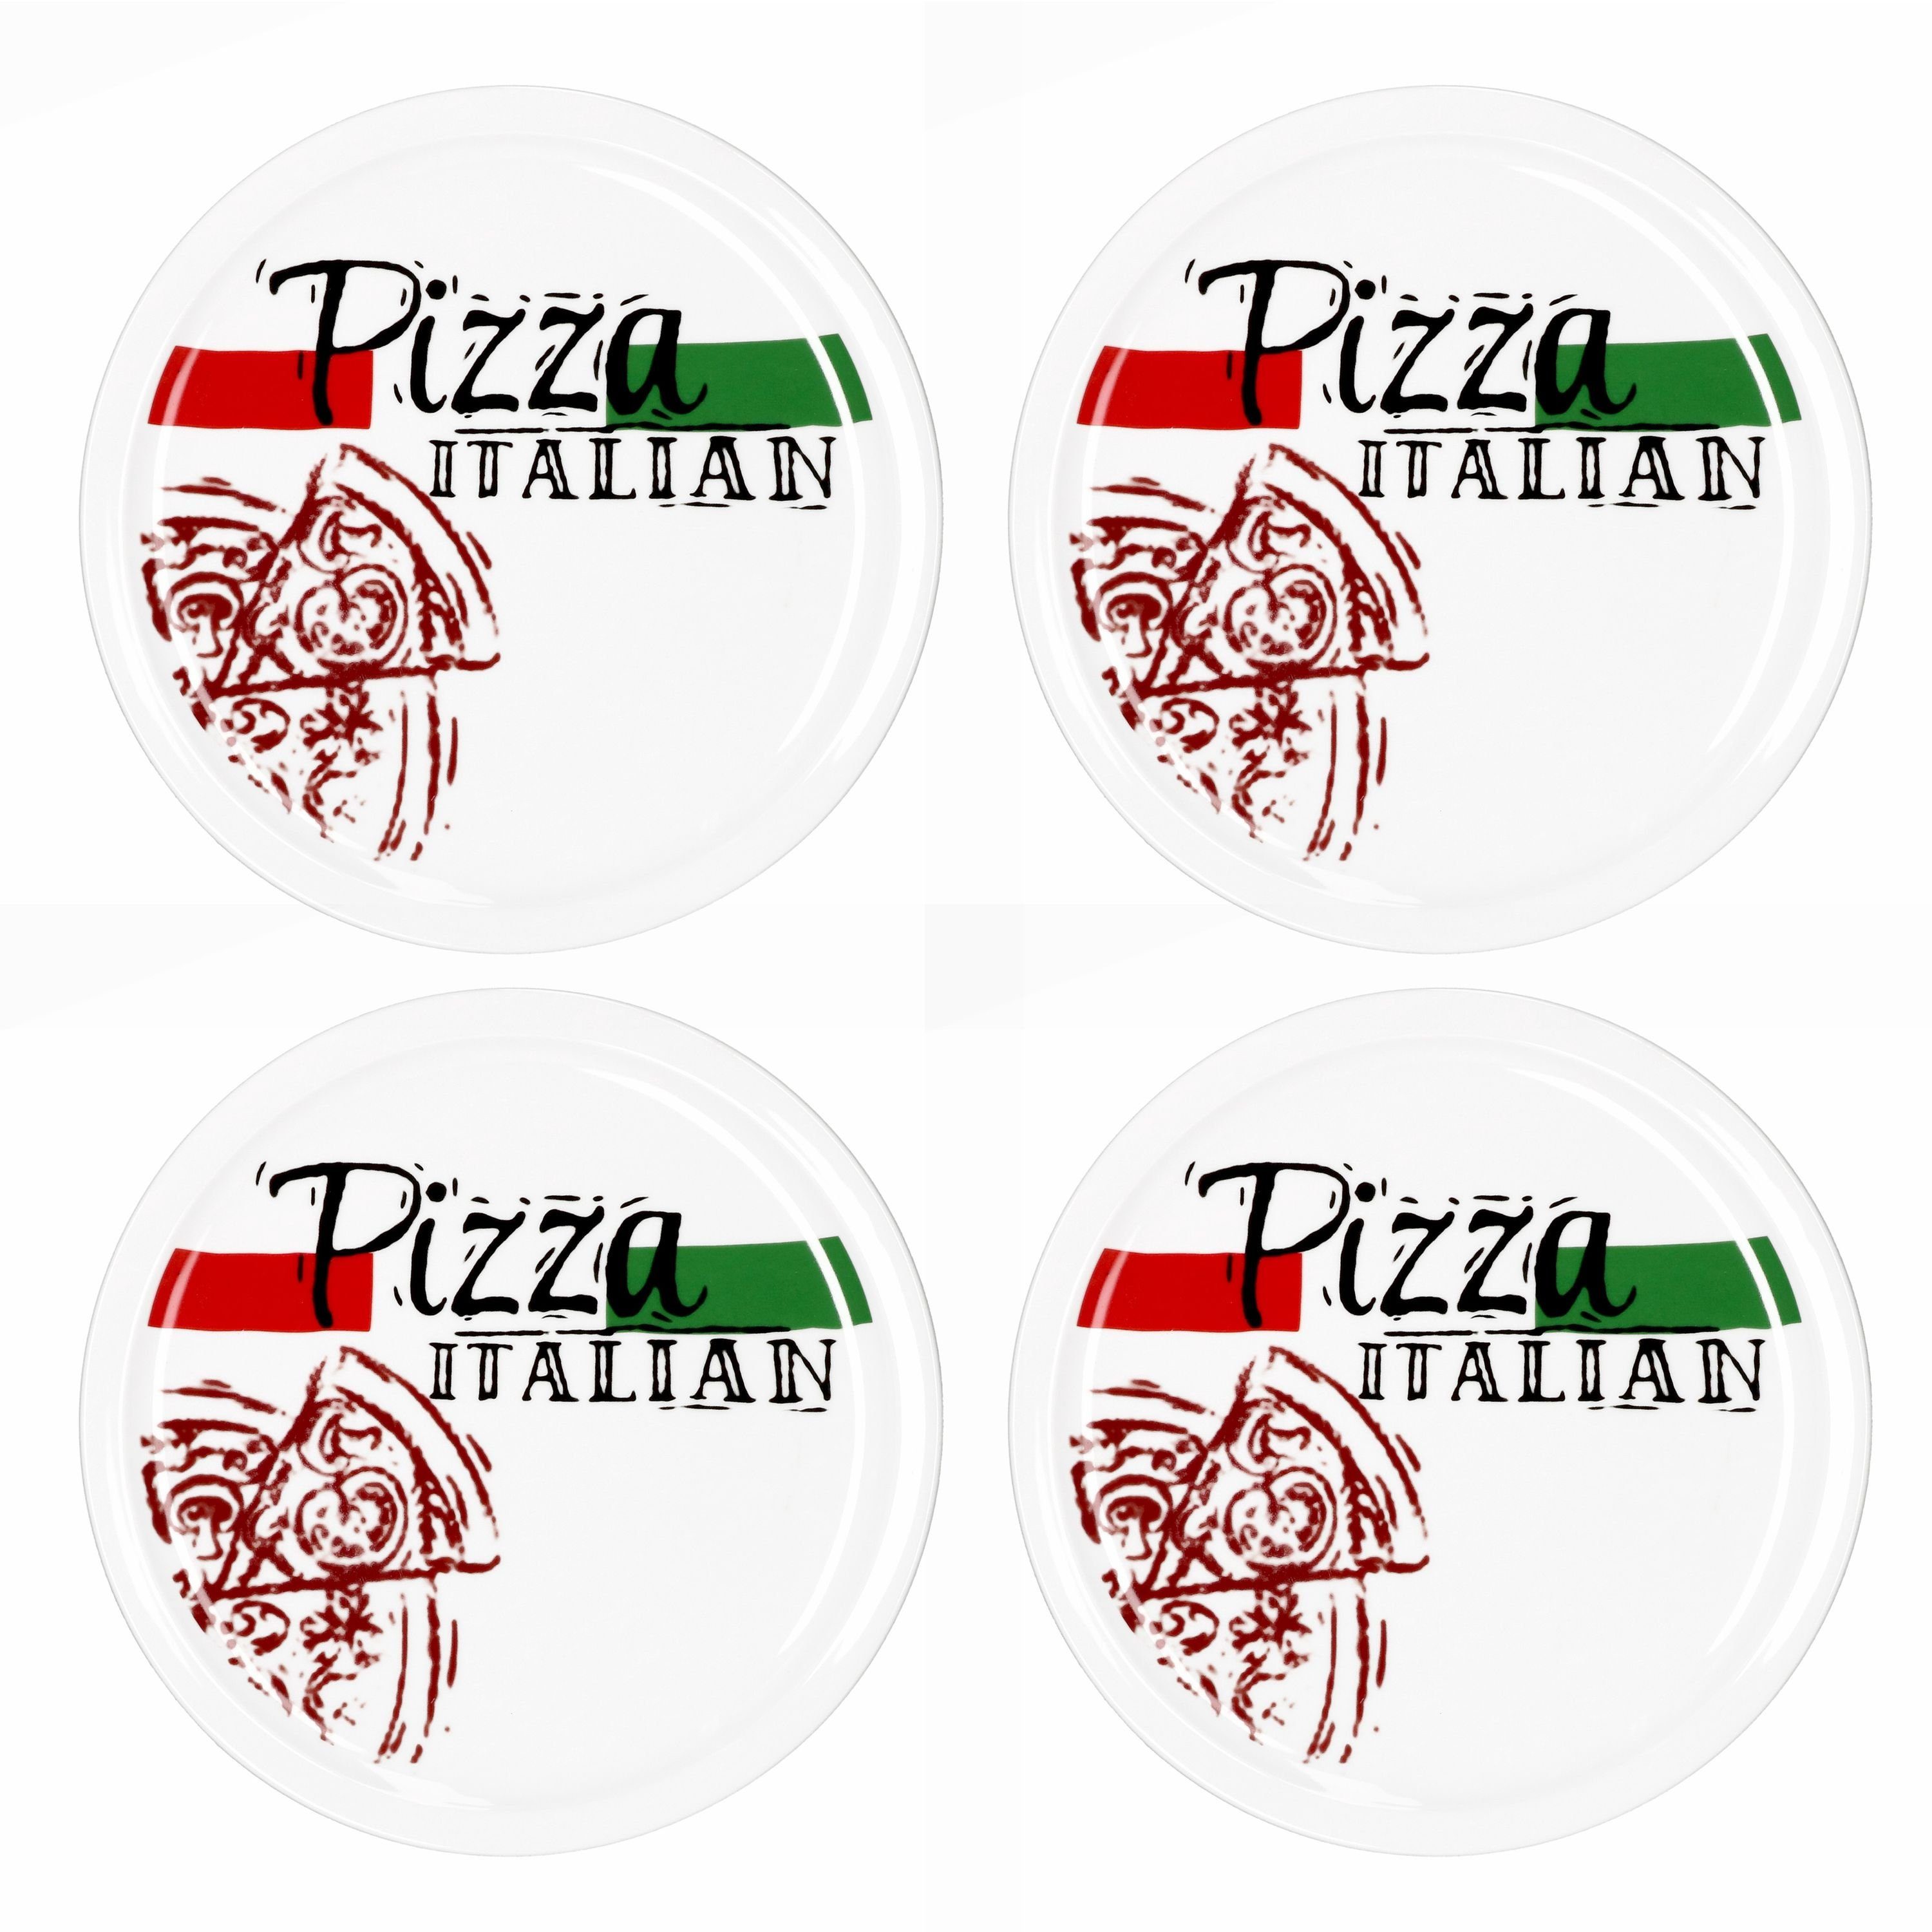 Pizzateller MamboCat Pizzateller Italian 4er Pizza 28cm Set